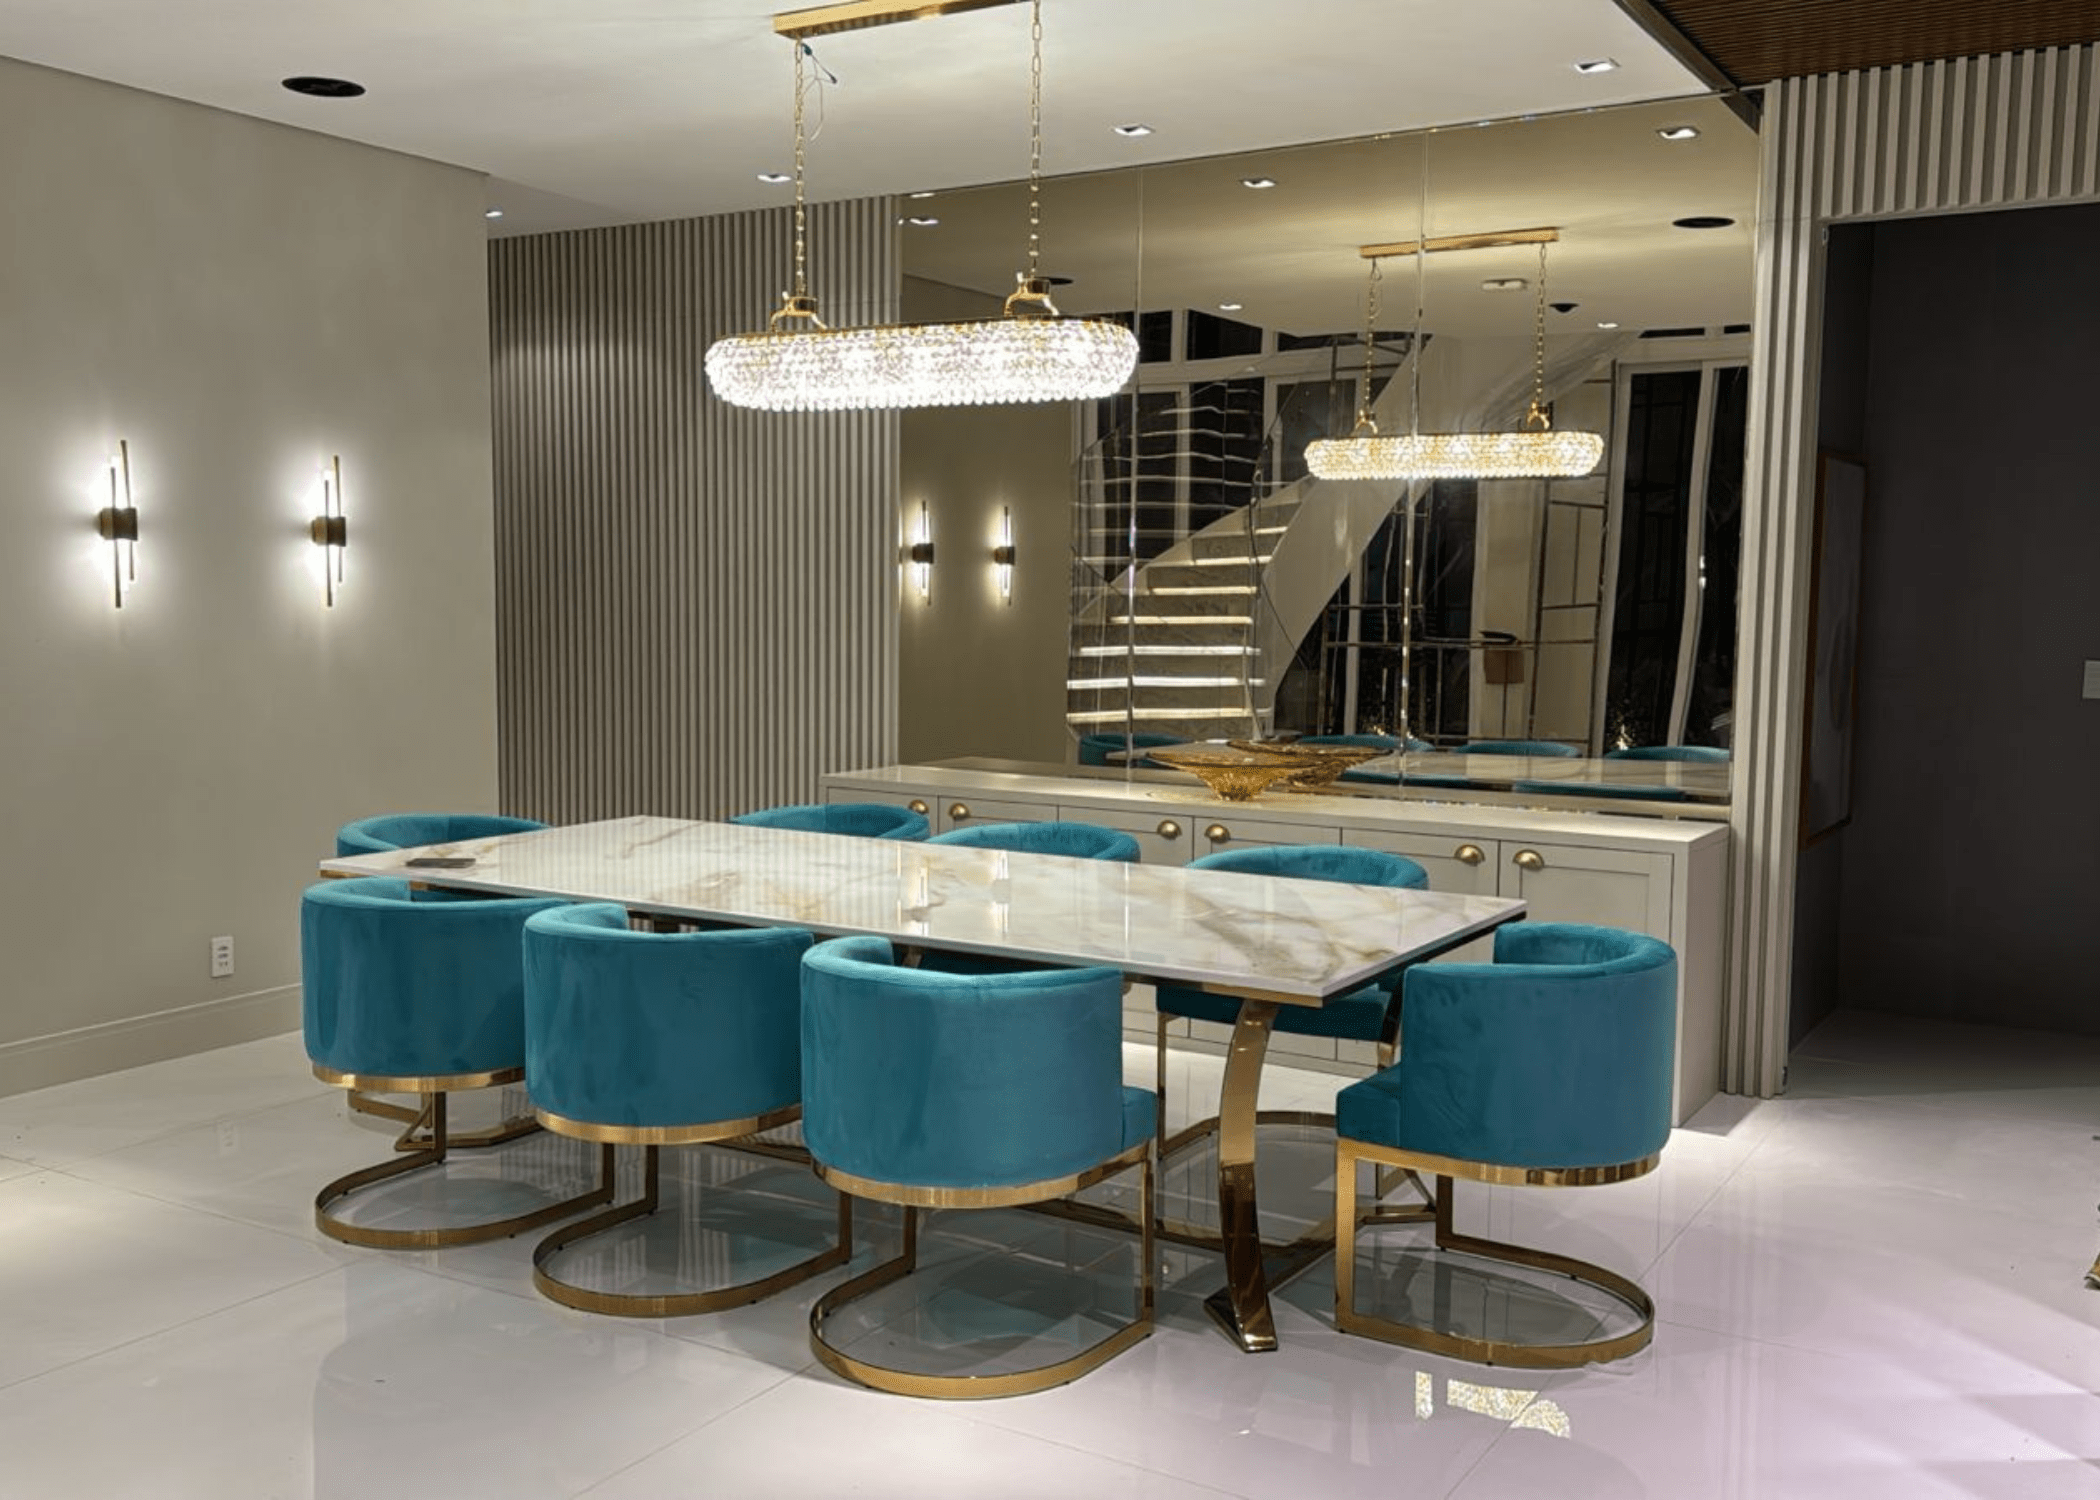 Mesa de Jantar Gregori seu design com linhas modernas proporciona requinte e elegância para a sala de jantar.